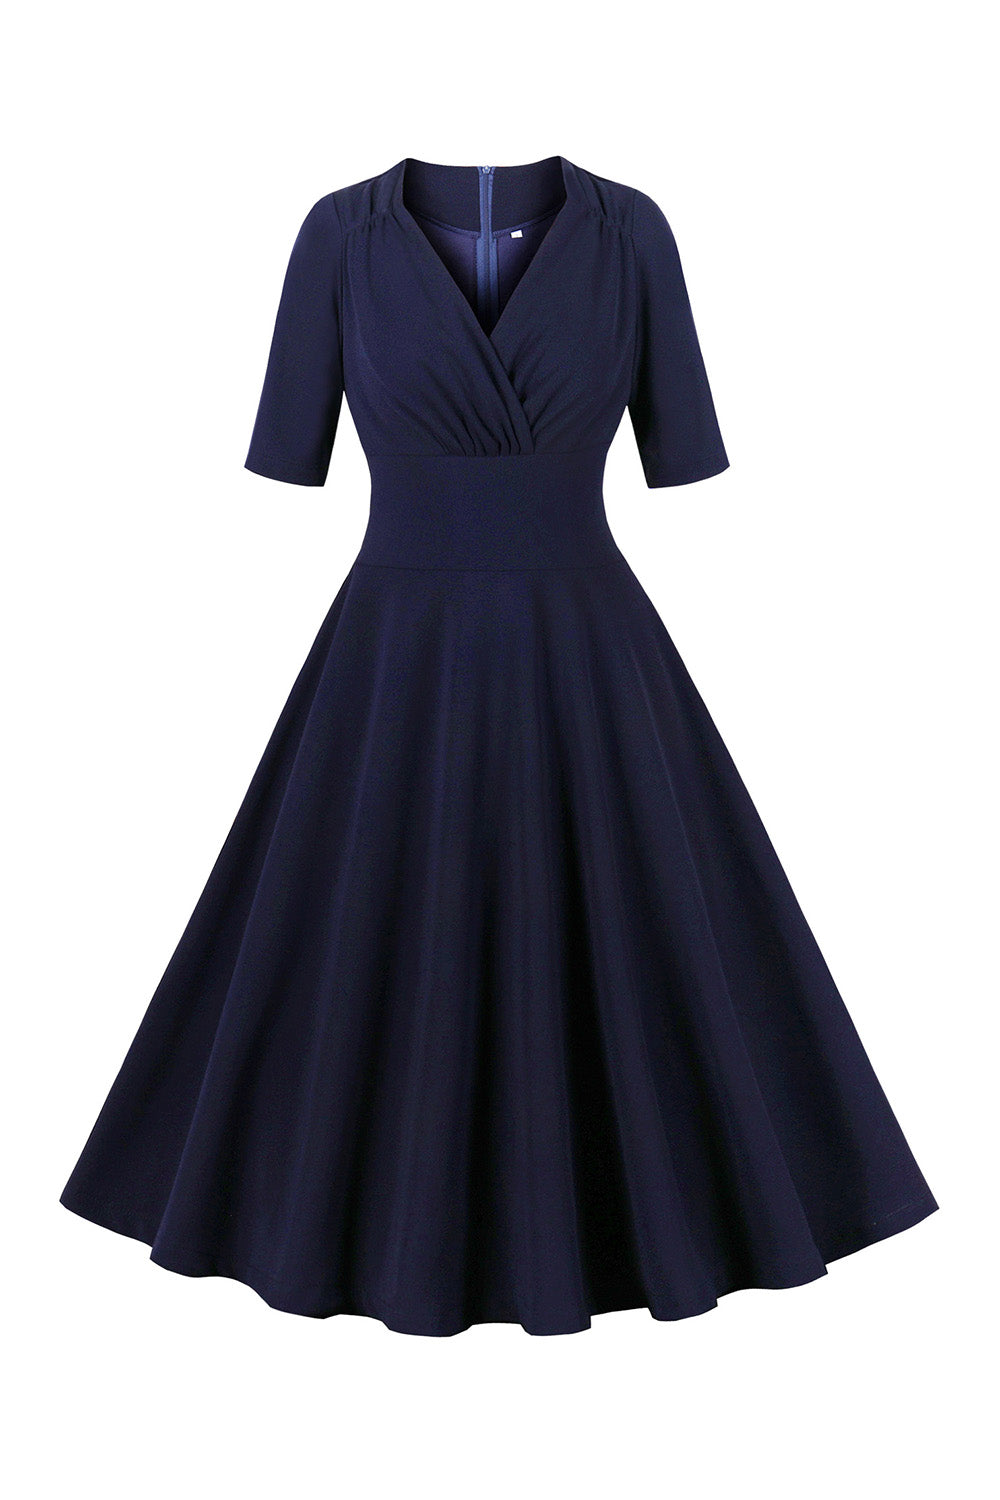 Navy halvermer V hals 1950-tallet kjole